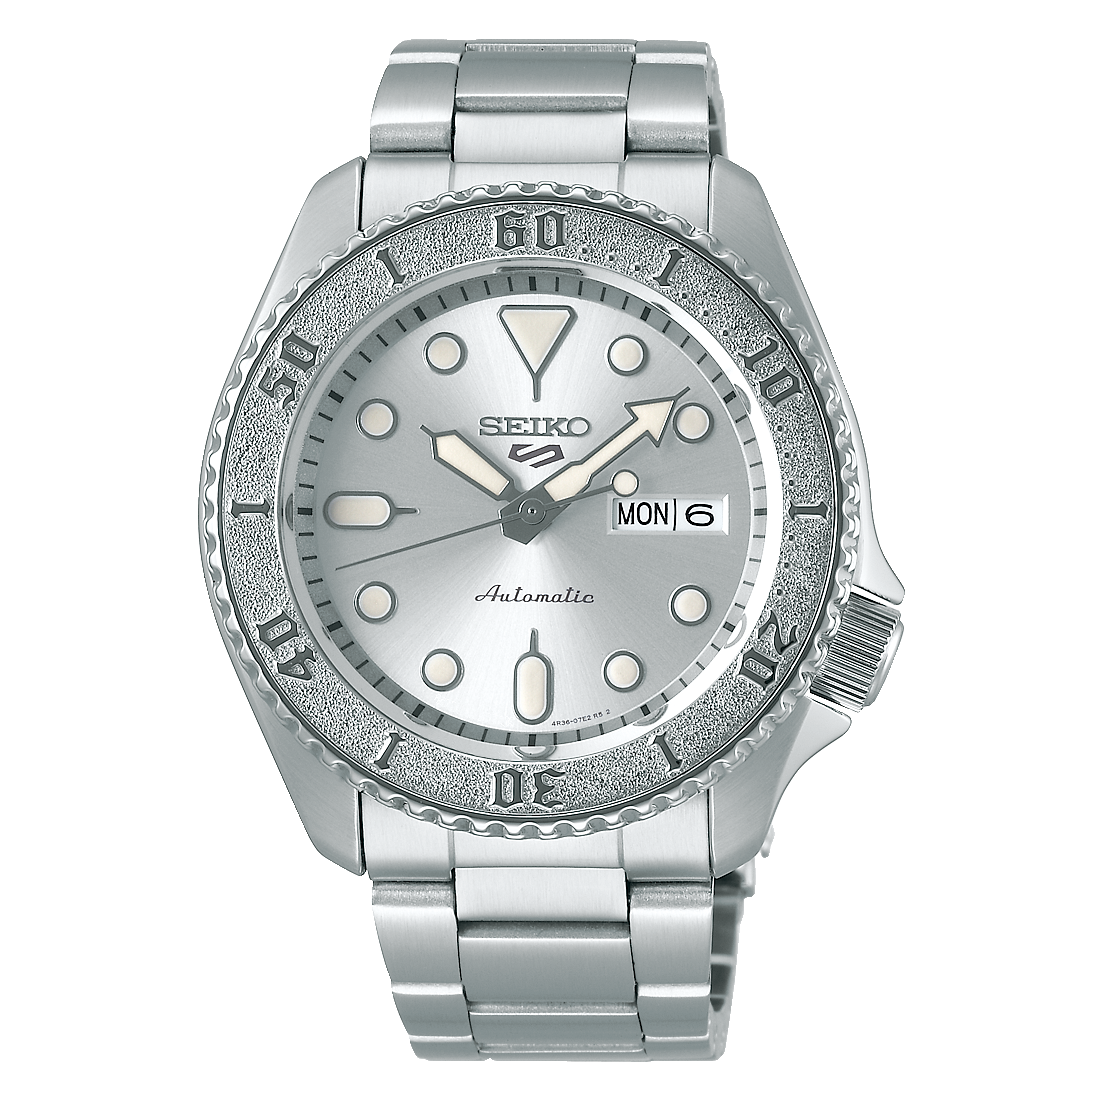 SRPE71 | Seiko Watch Corporation